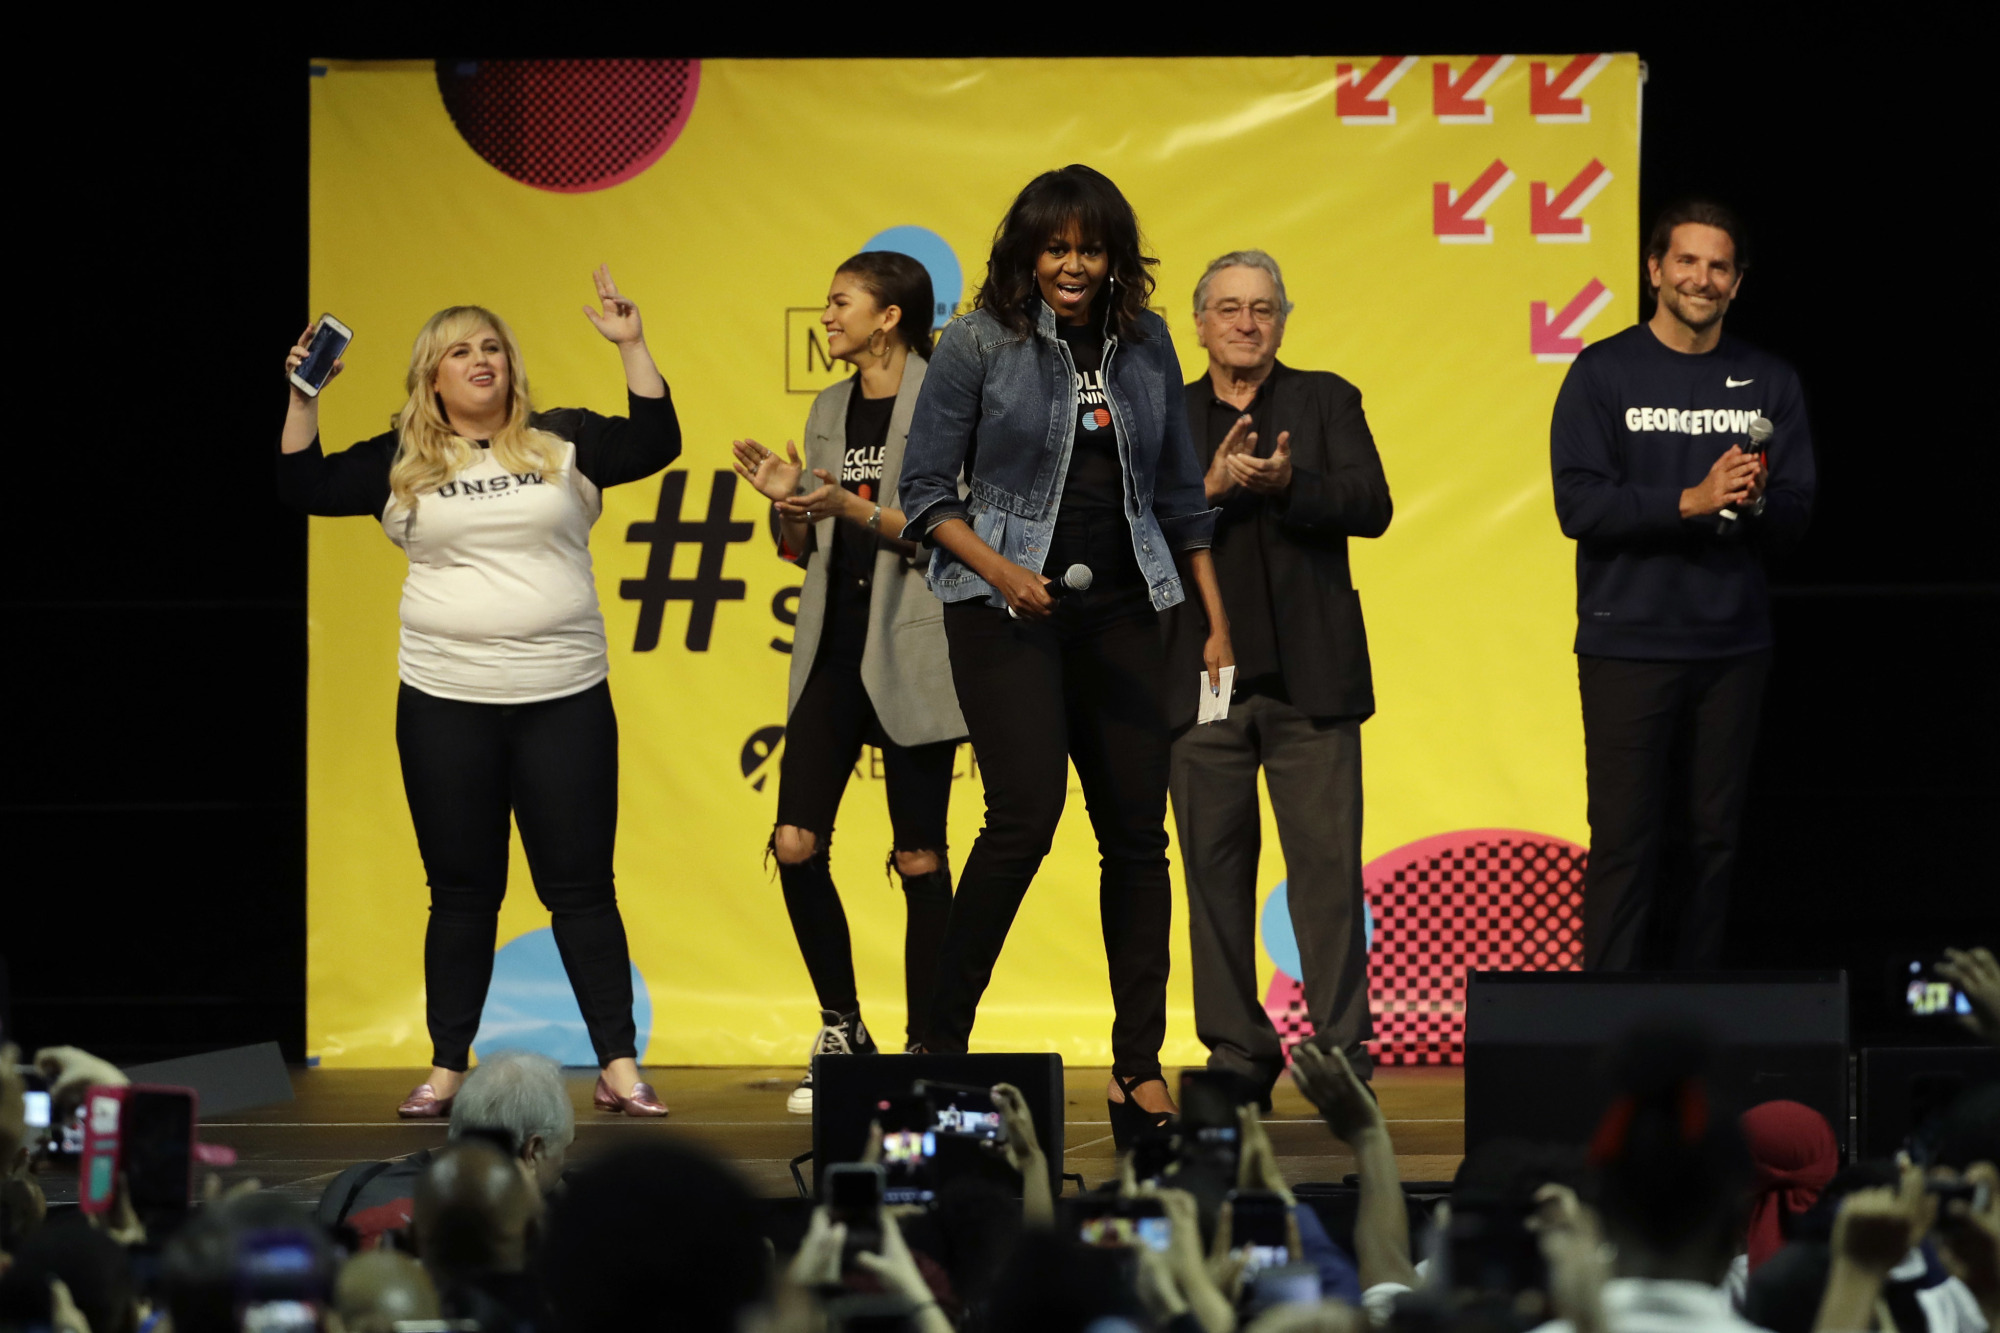 Michelle Obama, Robert DeNiro, Zendaya fete college-bound kids with dance party | The ...2000 x 1333